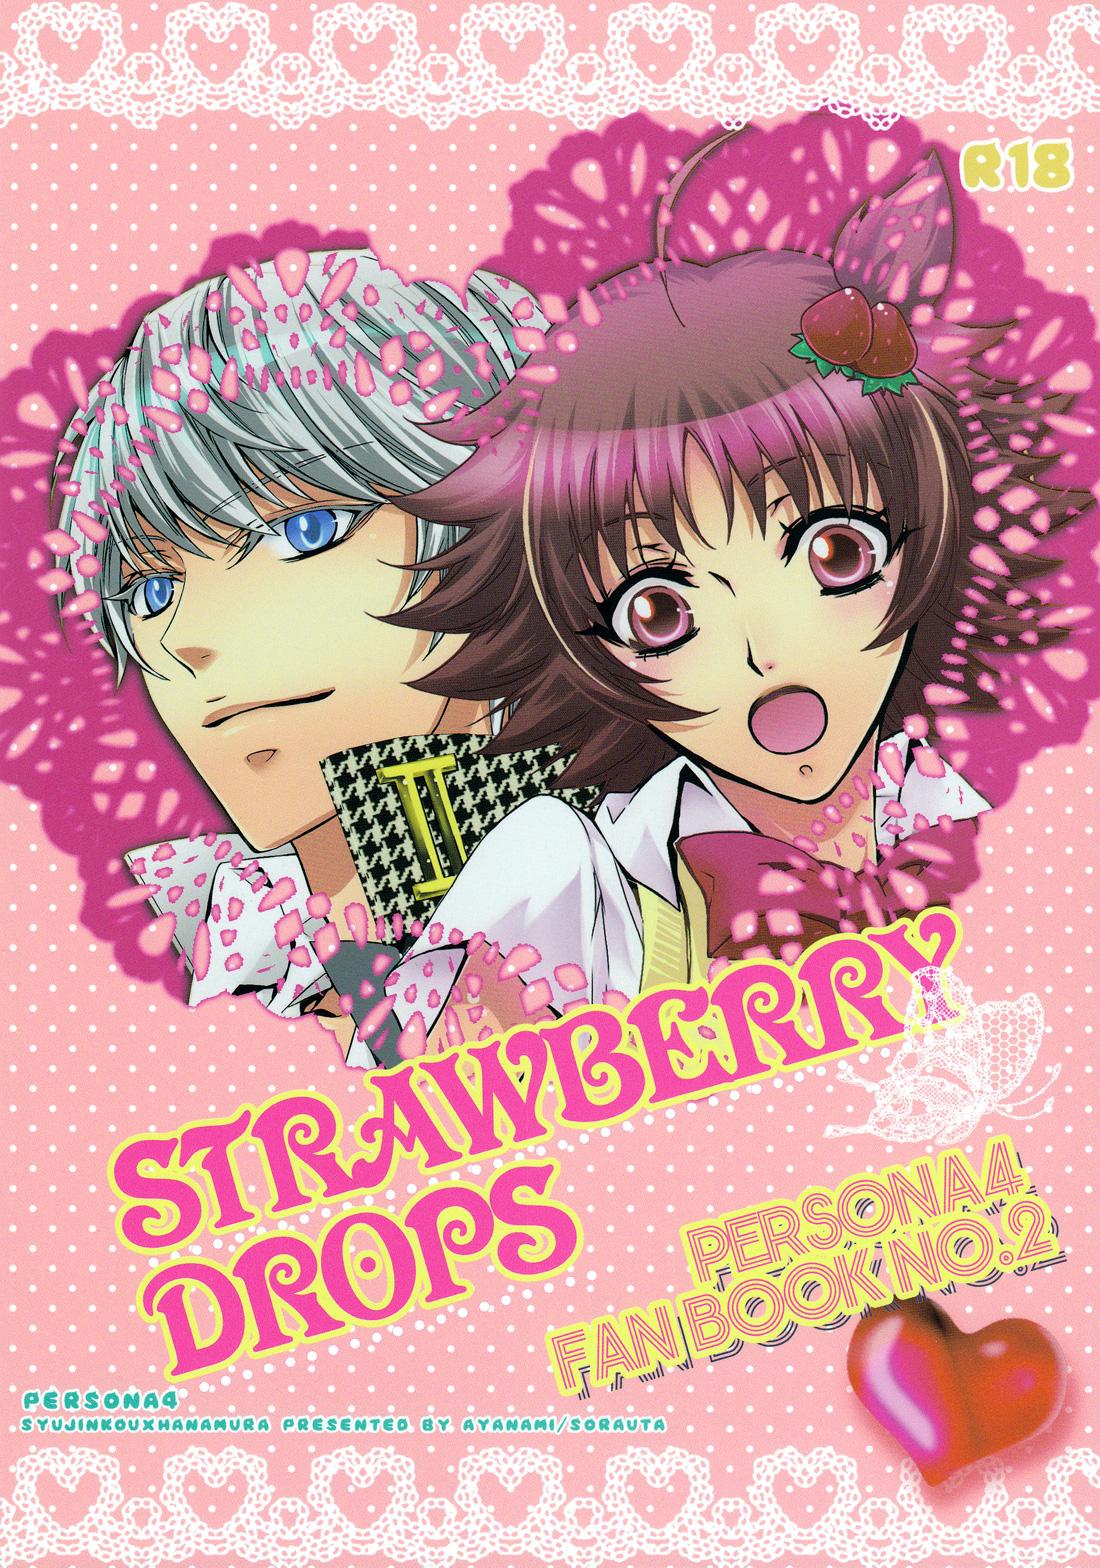 Strawberry Drops 29